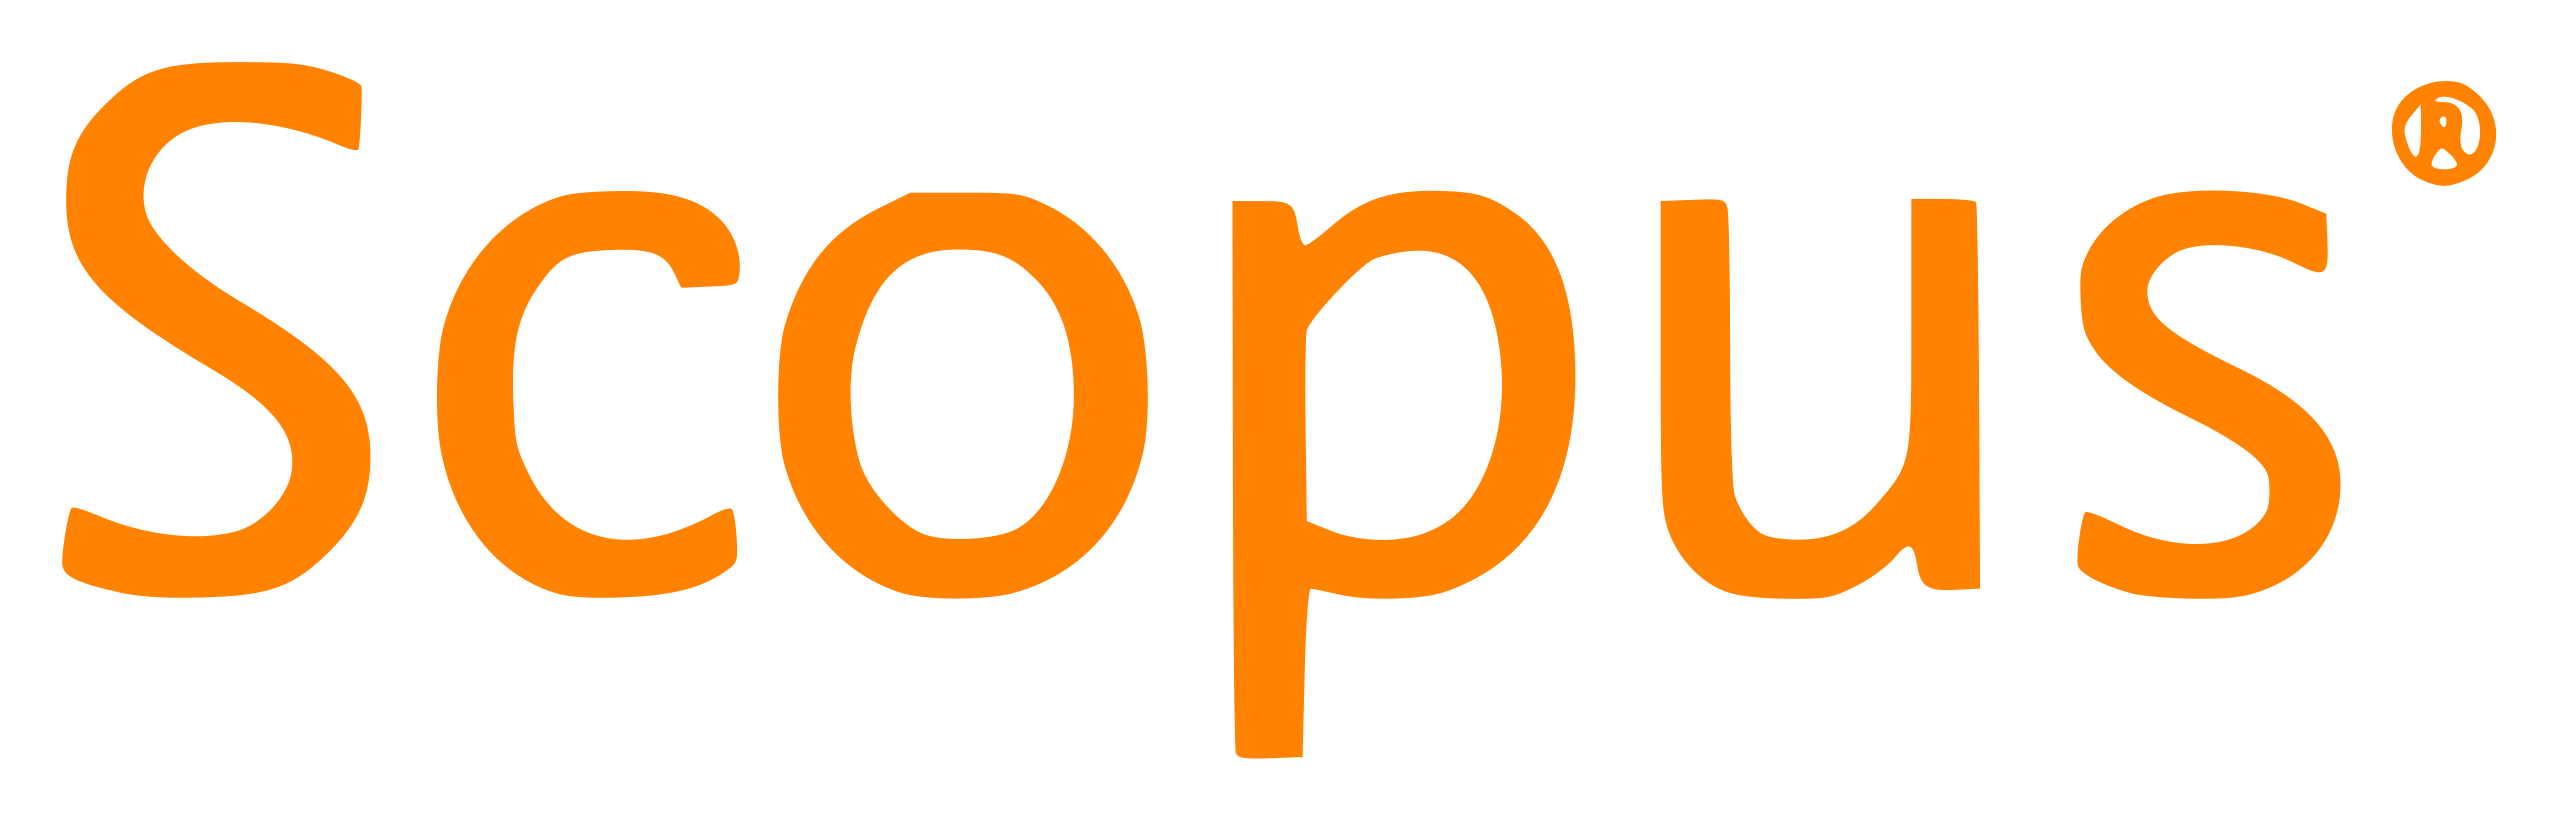 Файл:Scopus logo.svg — Википедия